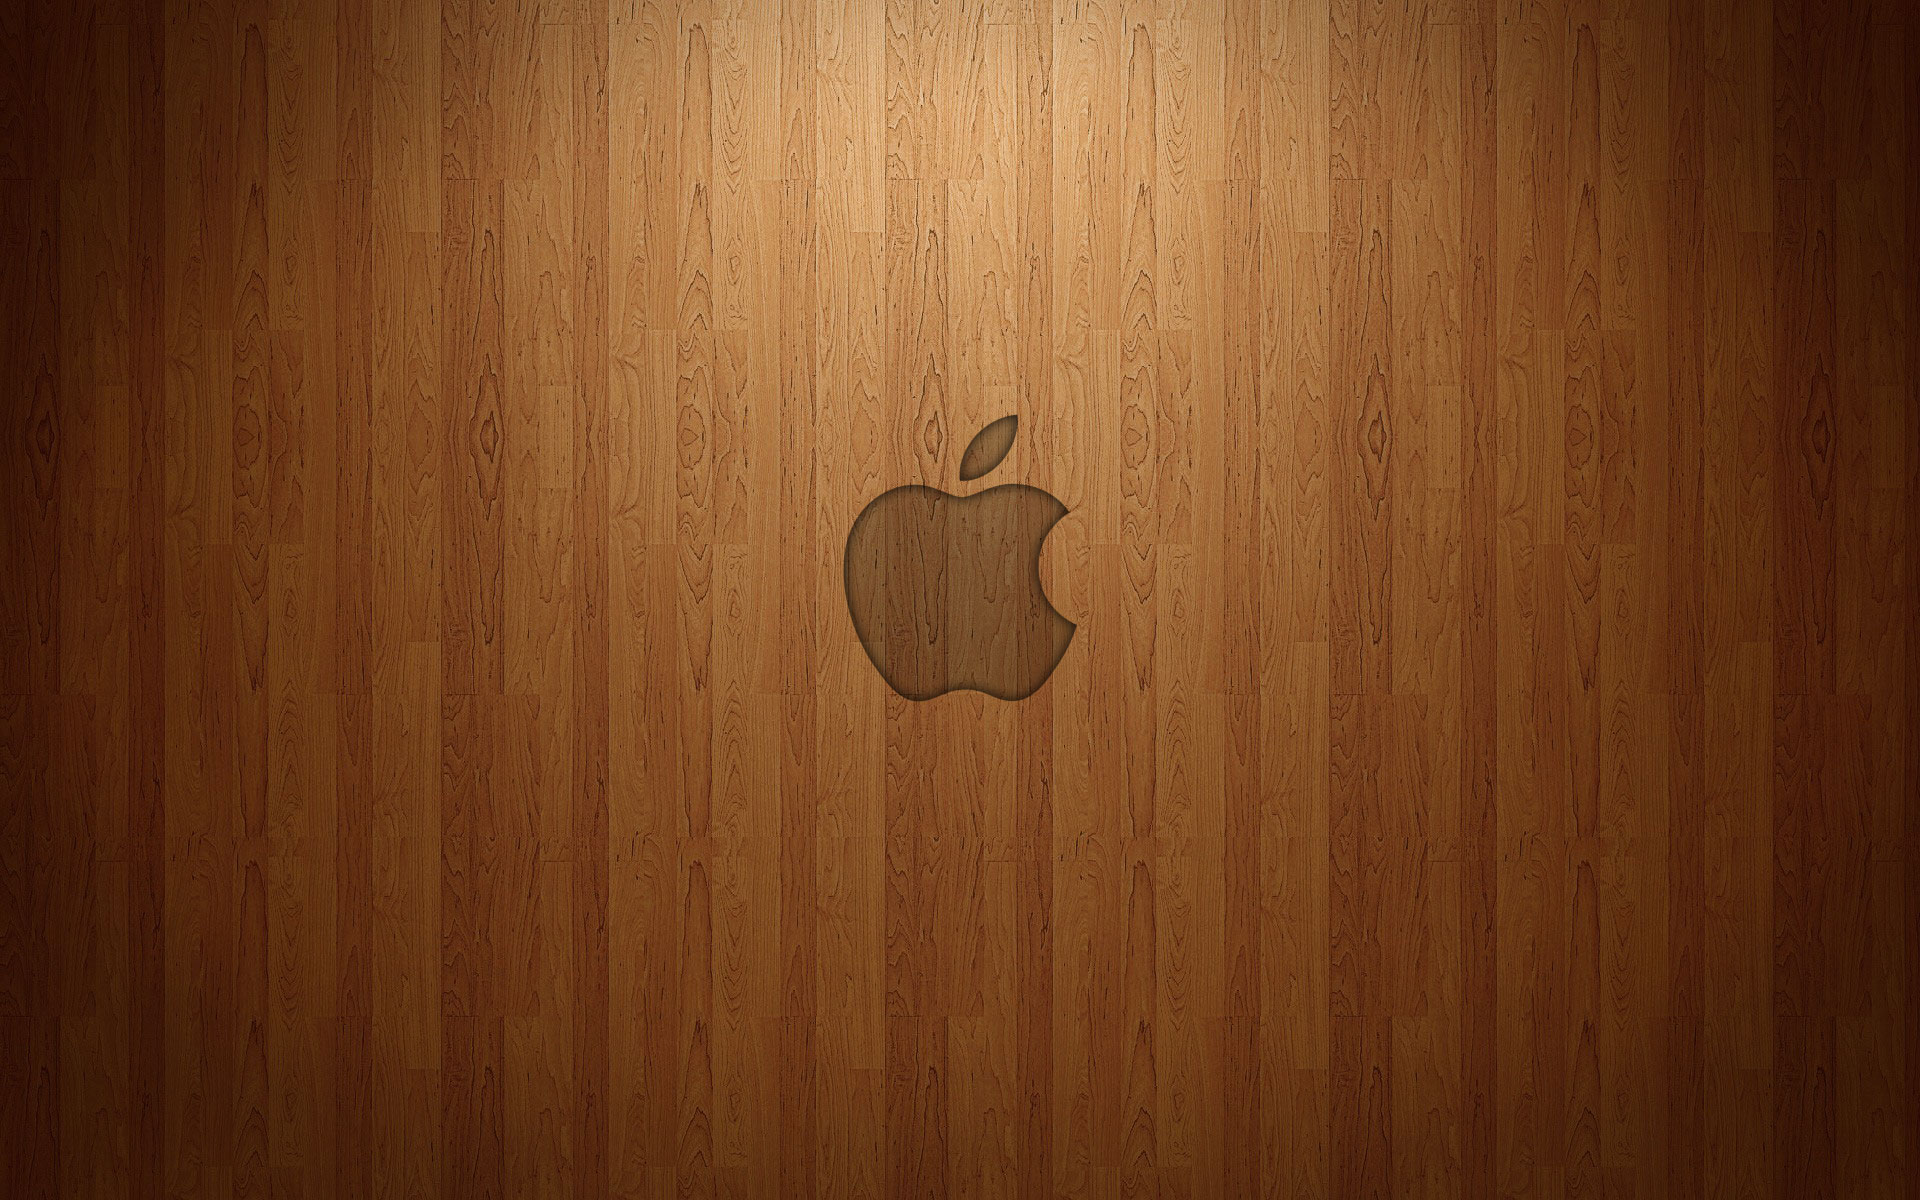 Apple Wallpaper Cool B1X » WALLPAPERUN.COM